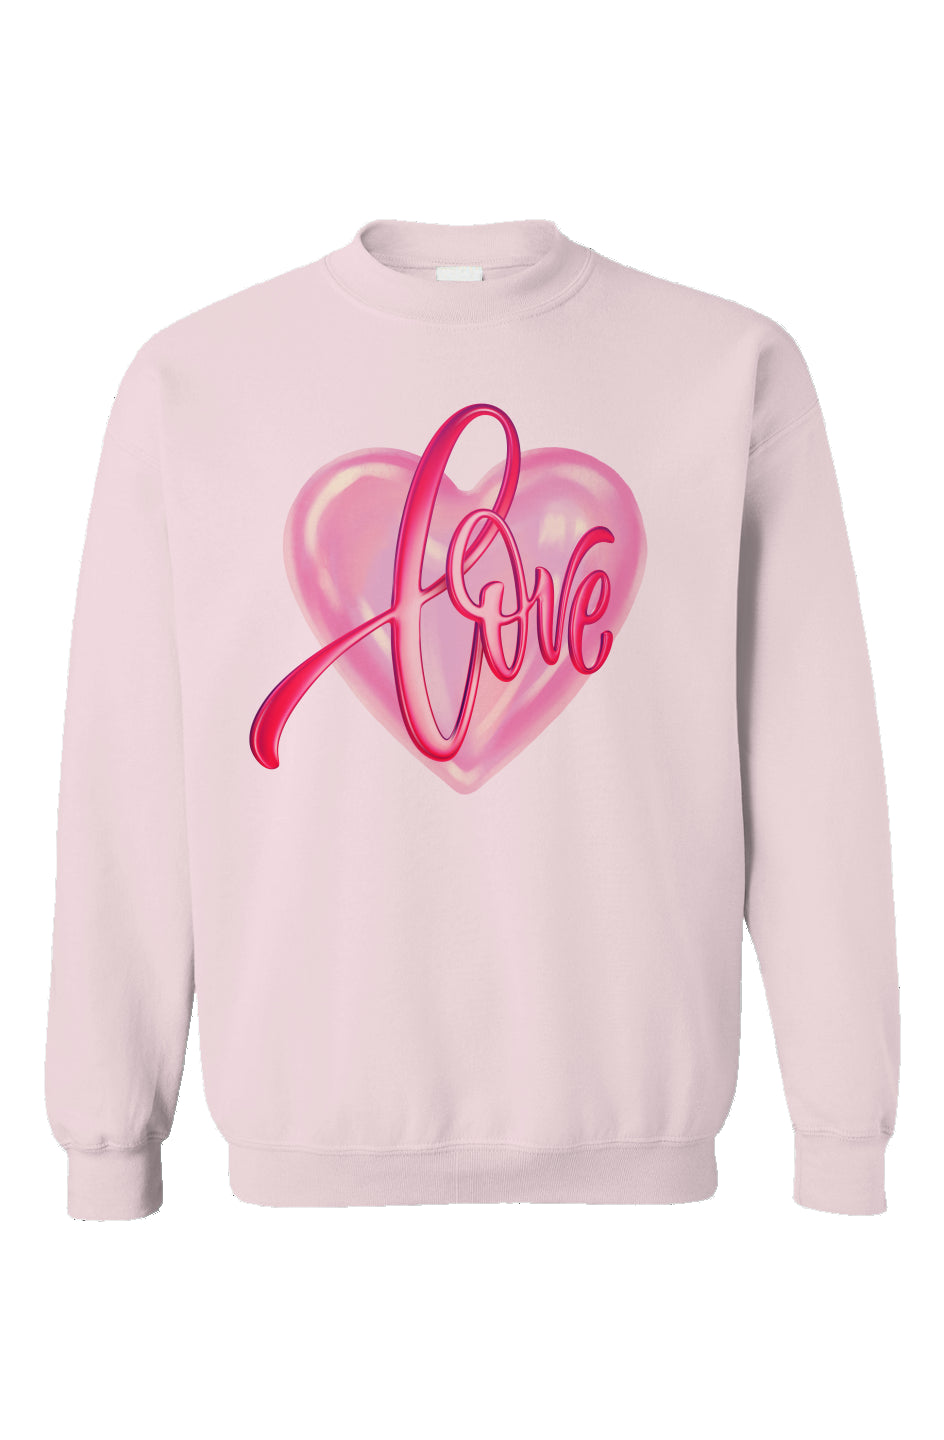 "LOVE" Love Heart- Light Pink Crewneck